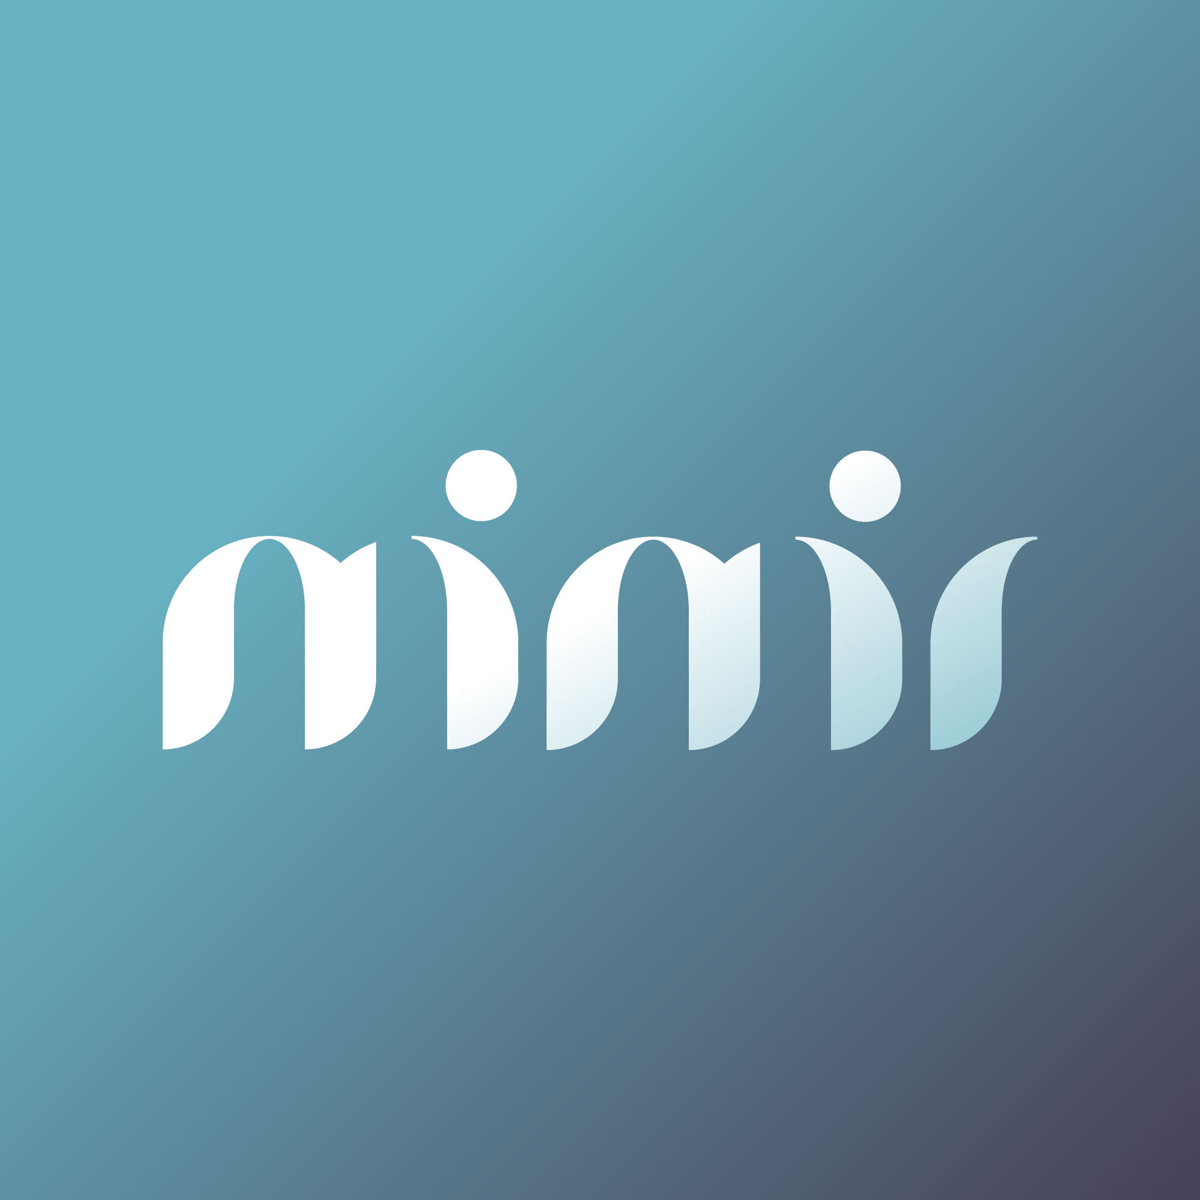 mimir-logo-1x1.jpg